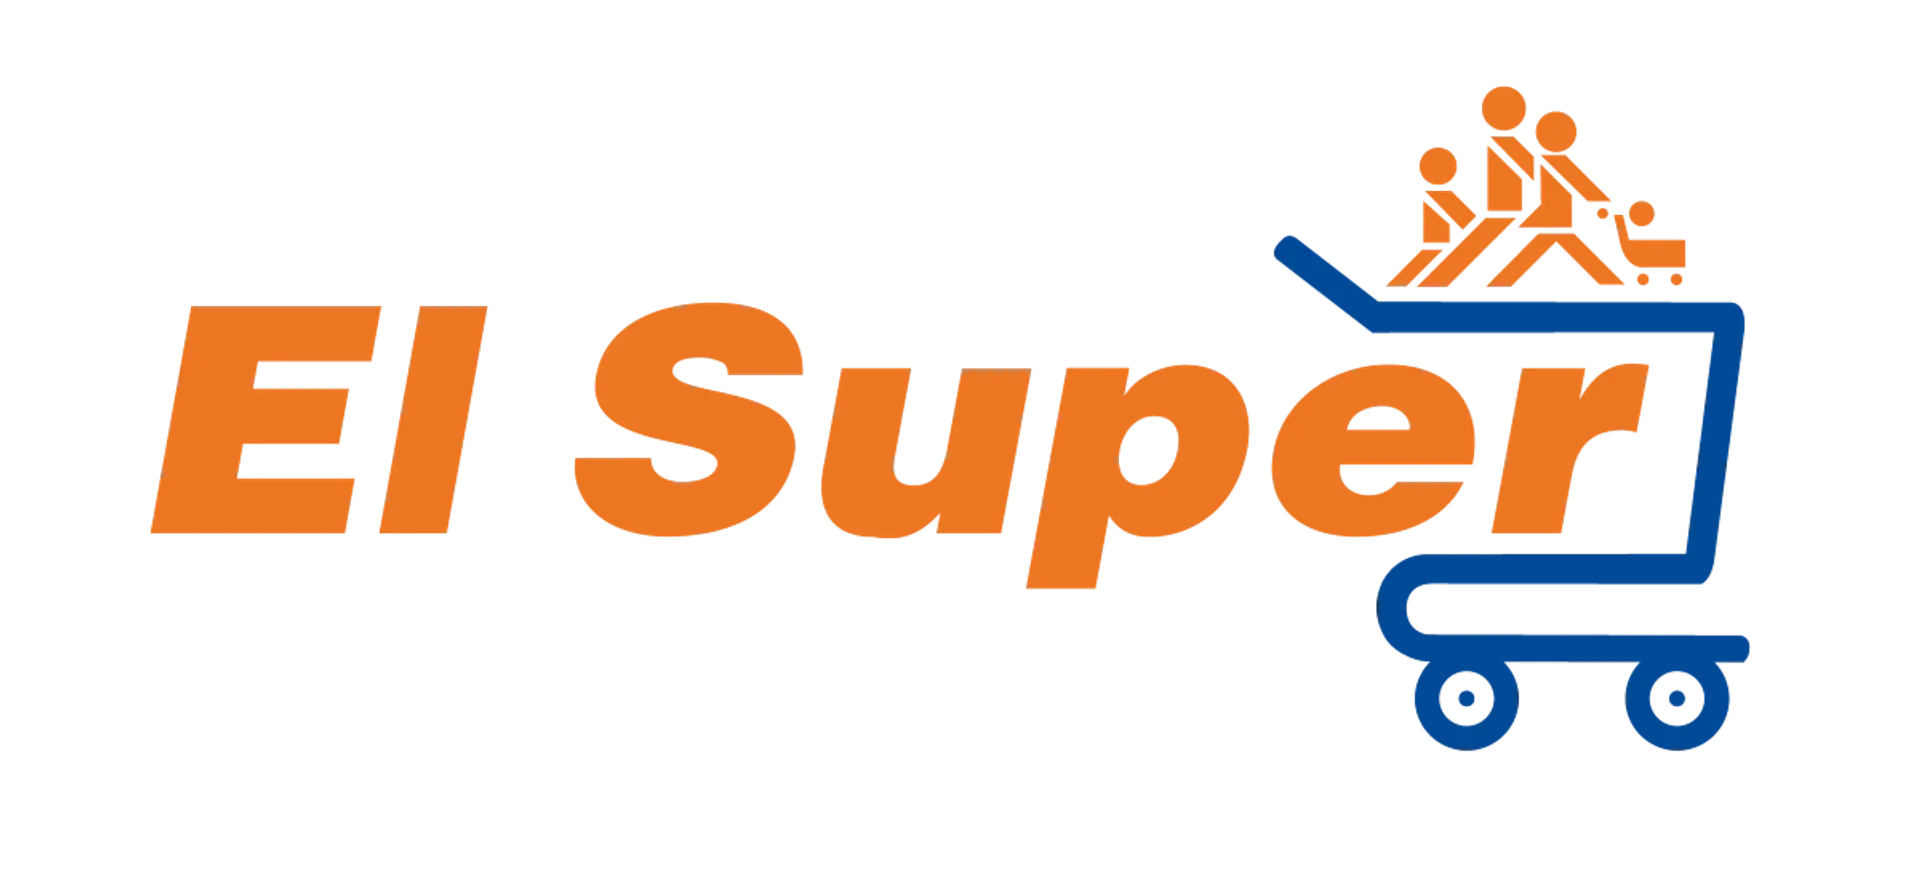 EL SUPER logo current weekly ad